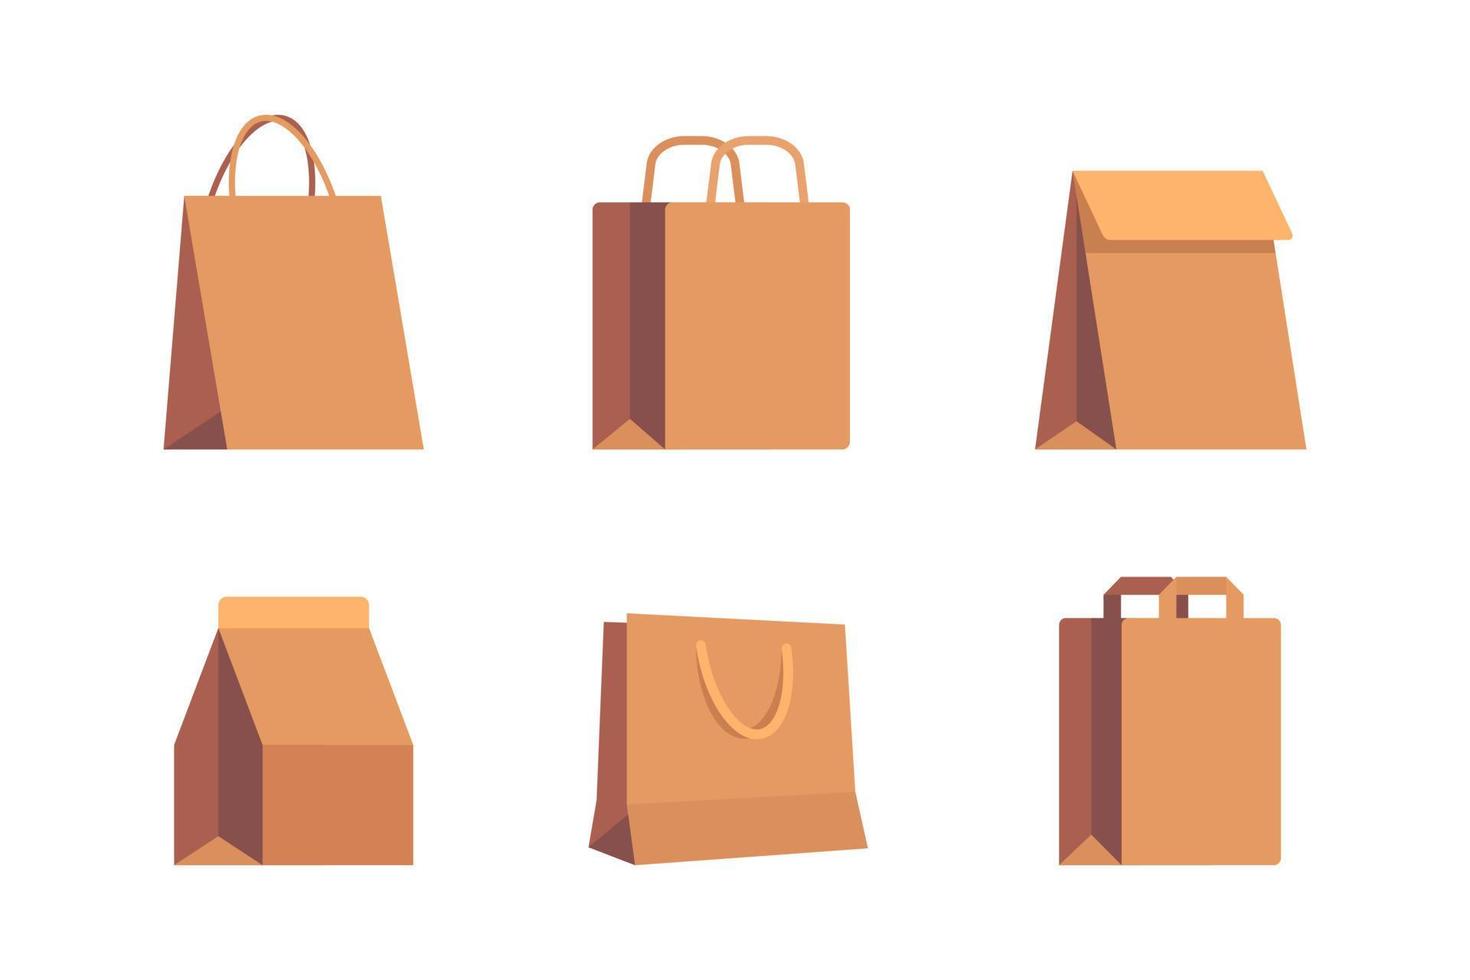 conjunto de sacos de papelão em branco marrom kraft vazios para compras na loja, embalagens para alimentos e bebidas com rótulos isolados no fundo branco vetor